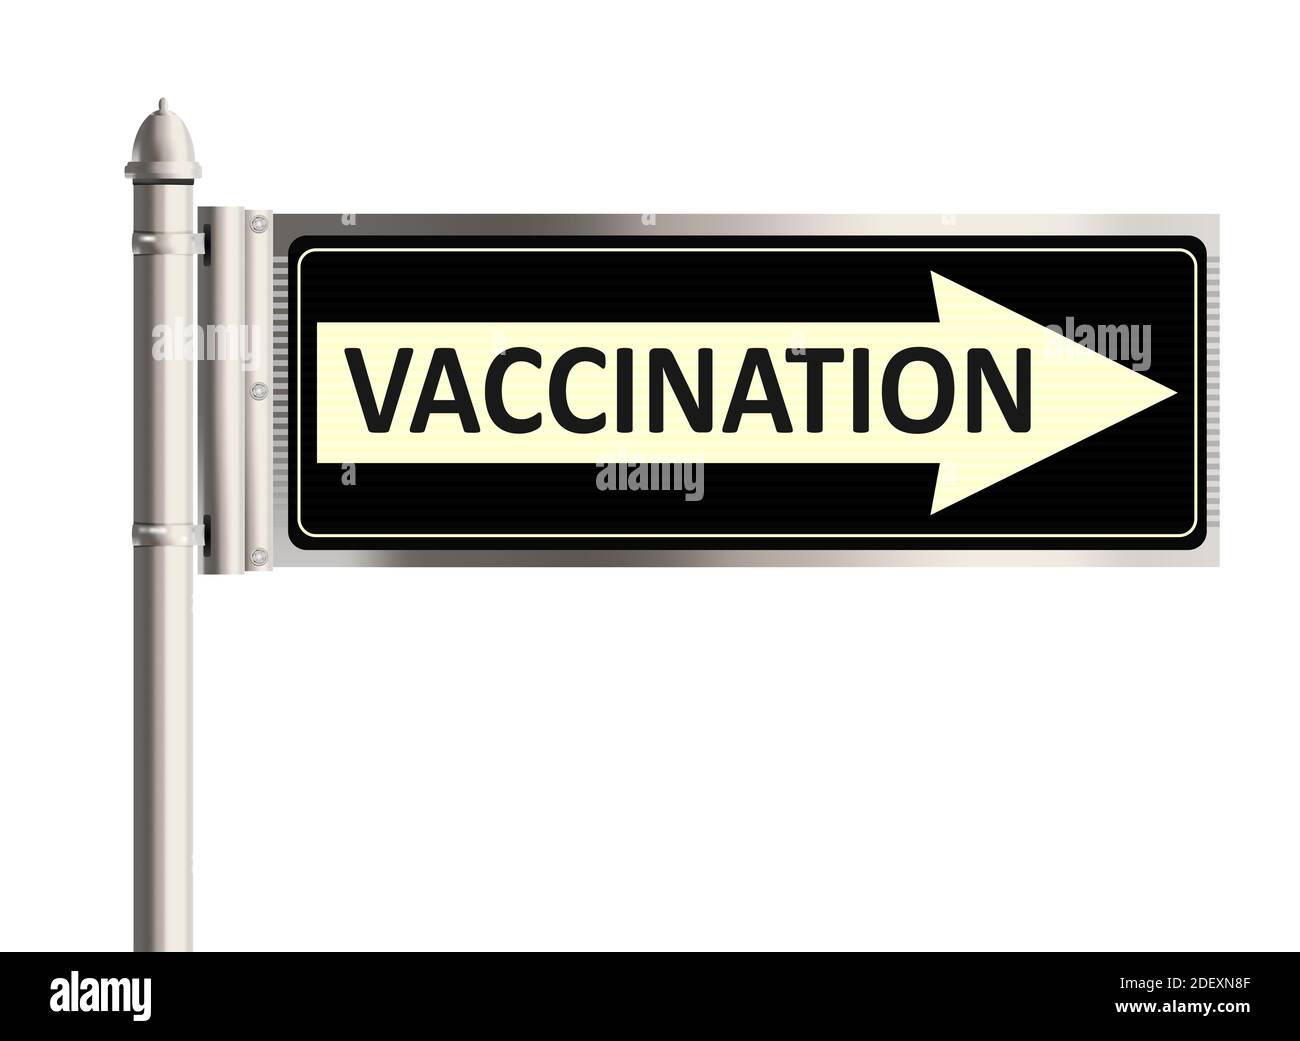 Concetto di vaccinazione. Segnale stradale con la parola vaccinazione su sfondo bianco. Illustrazione raster. Foto Stock